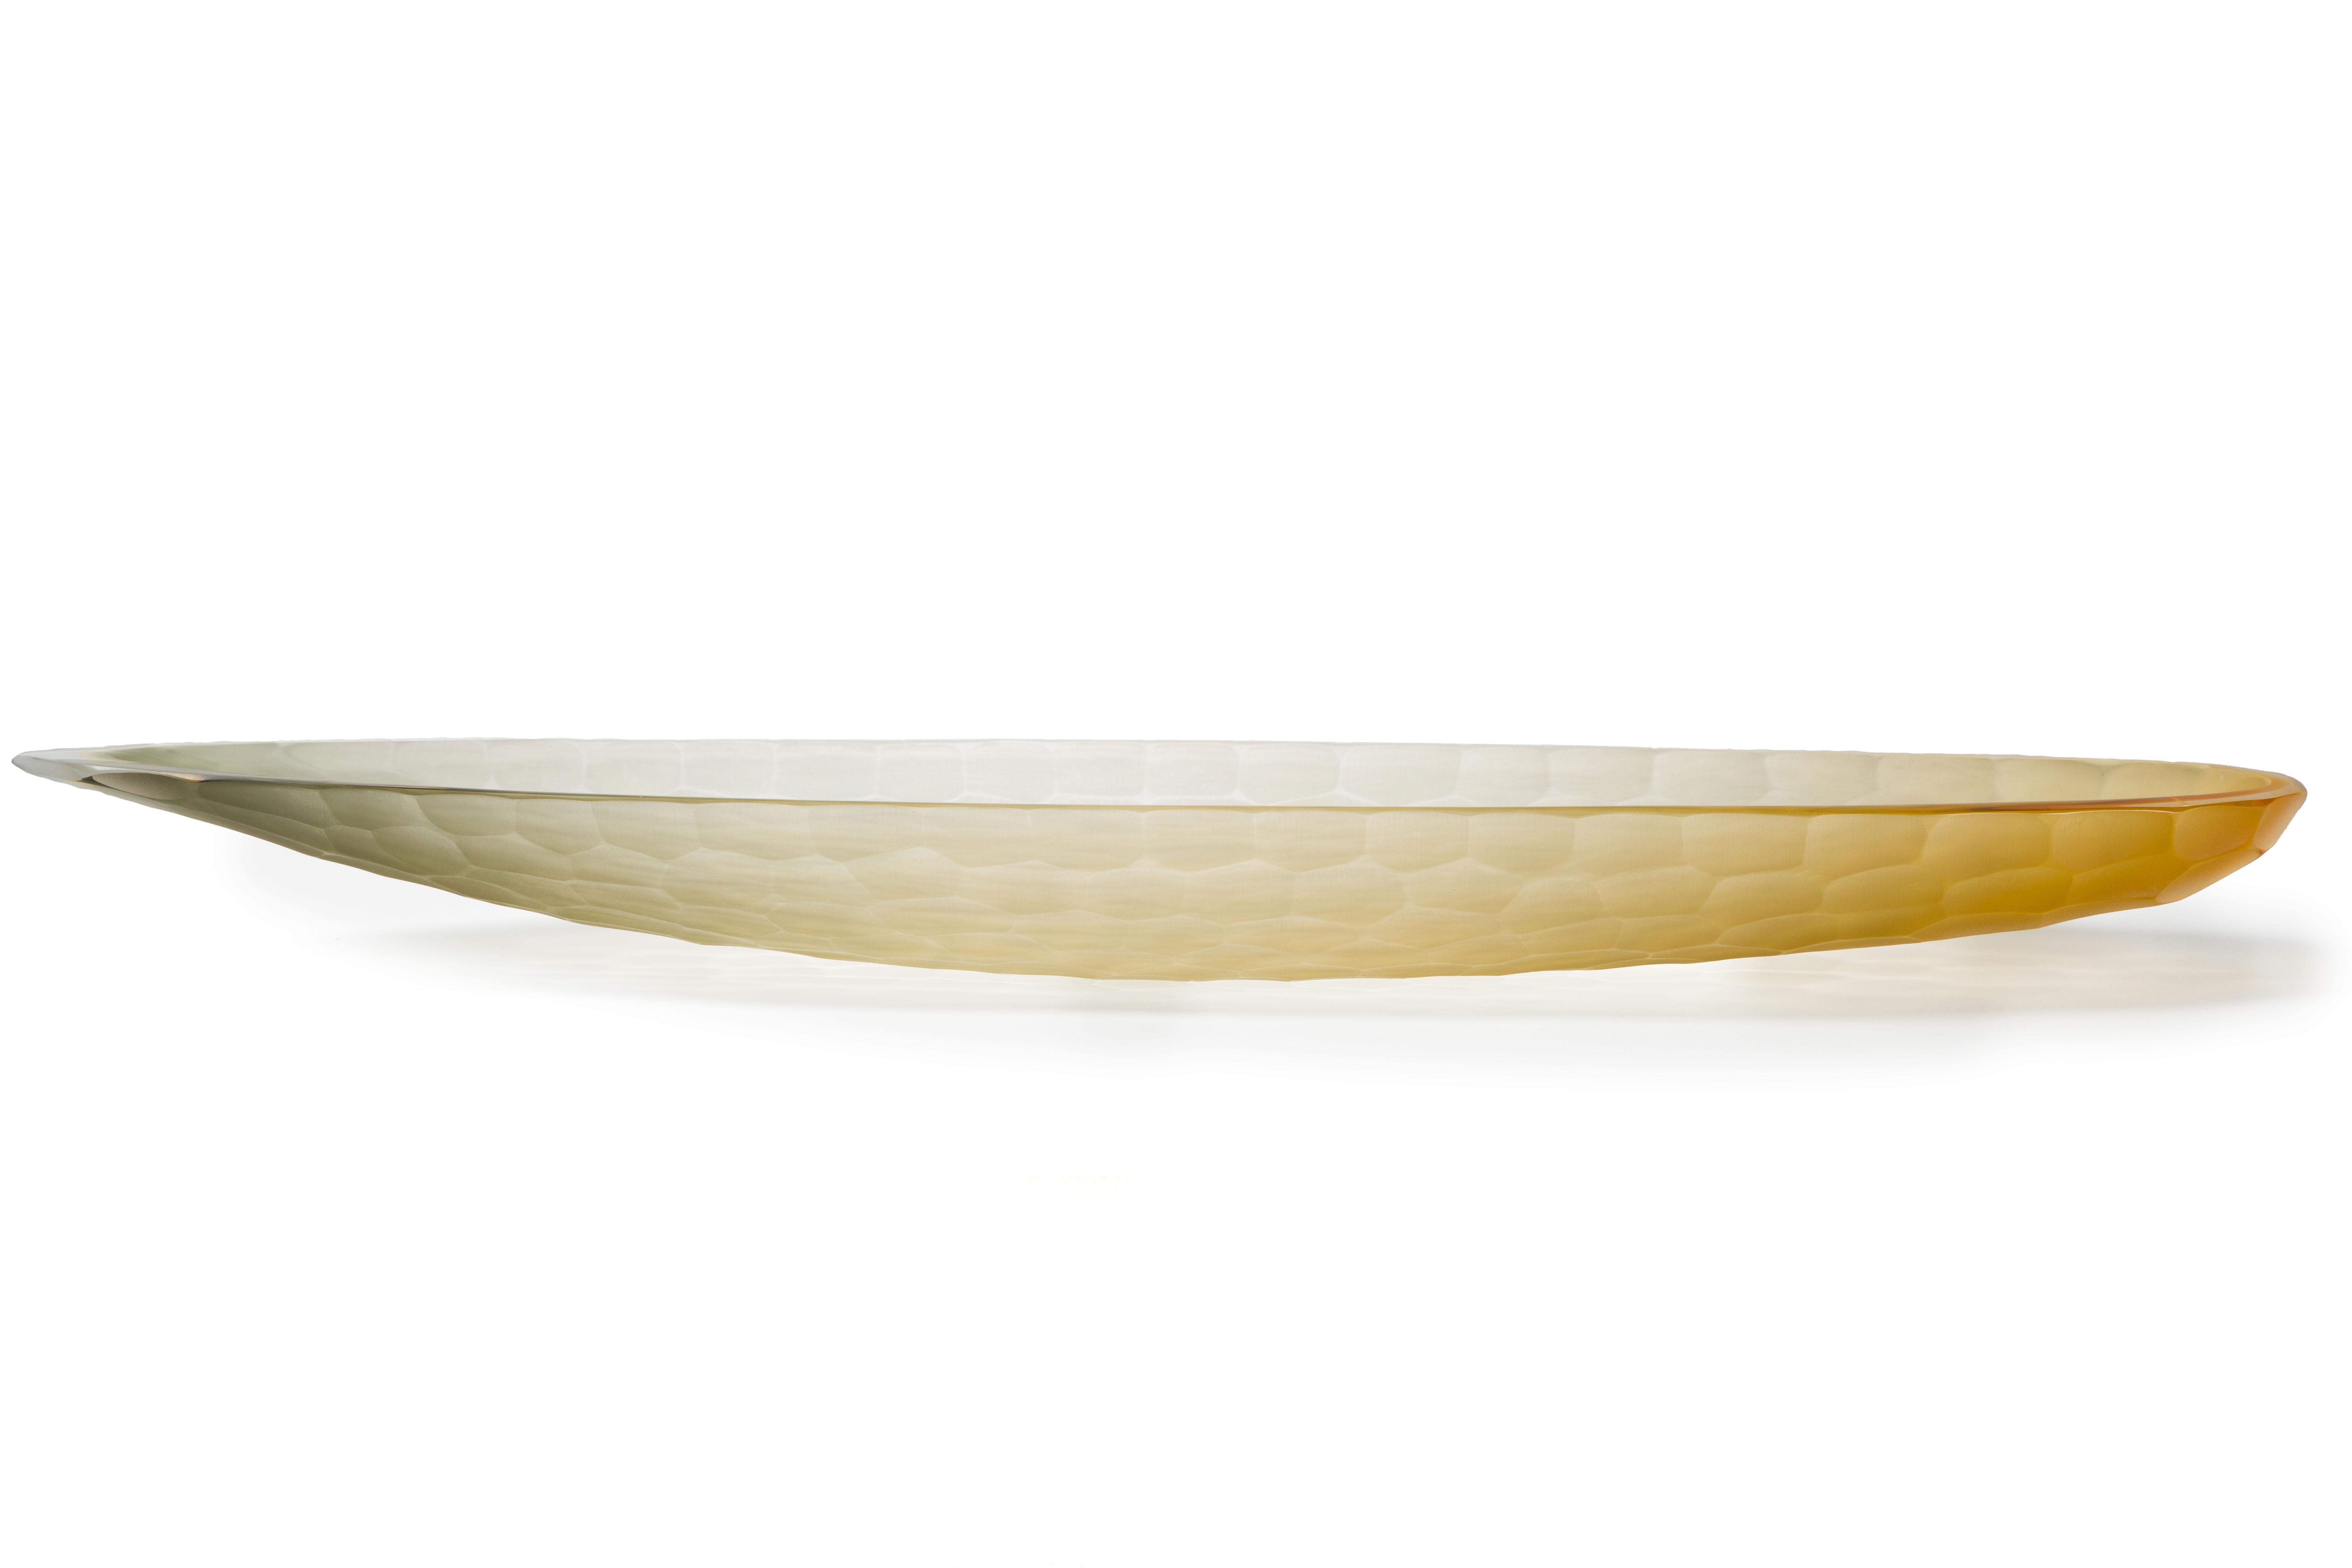 Unser Ziel ist die Emotion, durch das Glas, durch den Geist der Kunst zu erhellen.

1295 MURANO ist ein Ofen, ein Designlabor und ein Blickwinkel für die Inneneinrichtung
zu den exklusivsten Produktionen aus Muranoglas.
Unser Glas ist original,